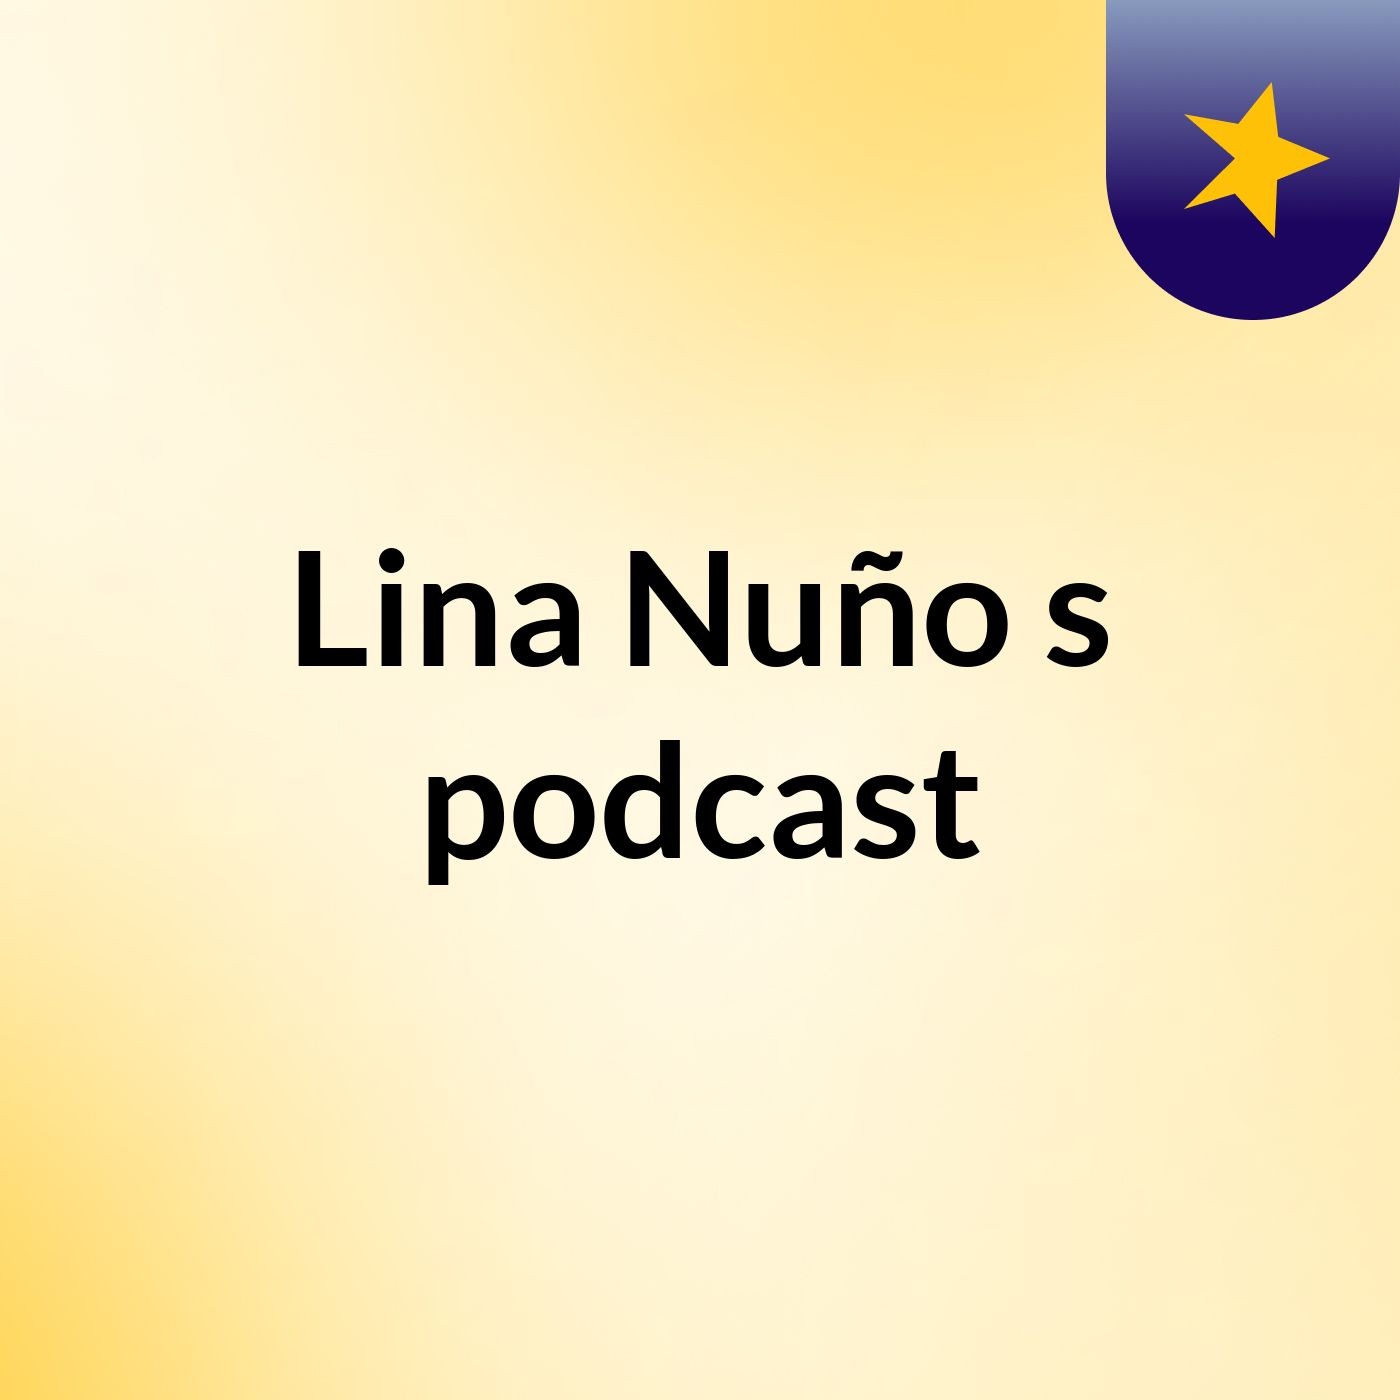 Lina Nuño's podcast